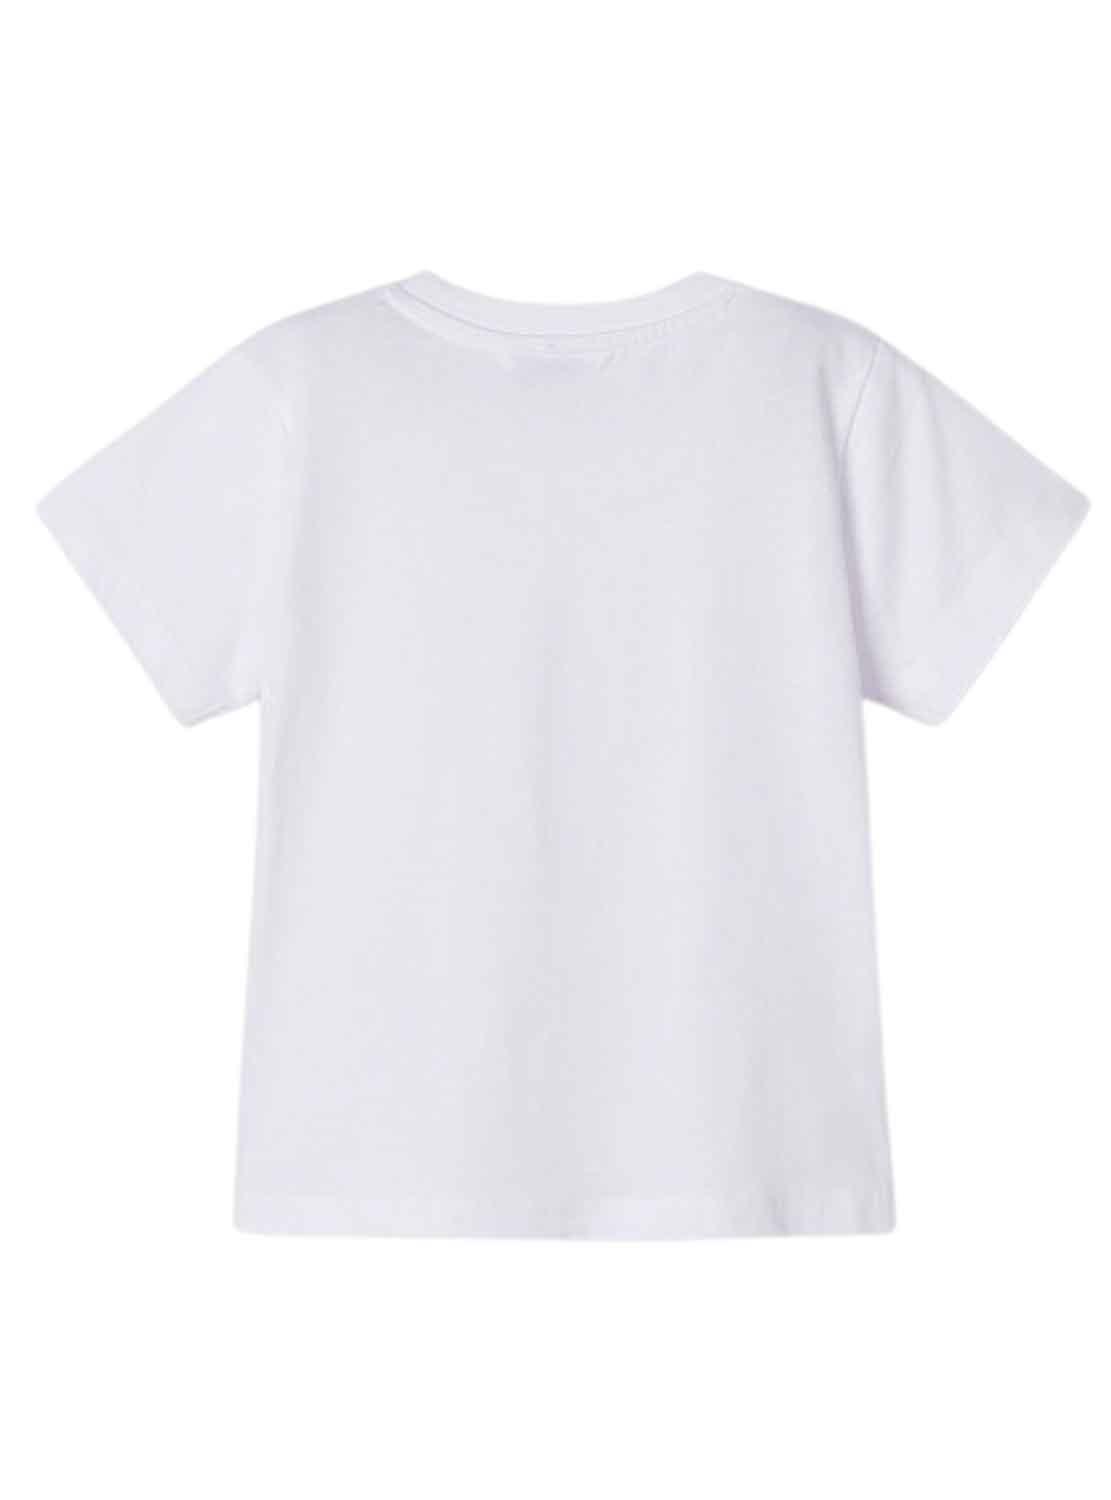 T-Shirt Mayoral Palms Bianco per Bambino